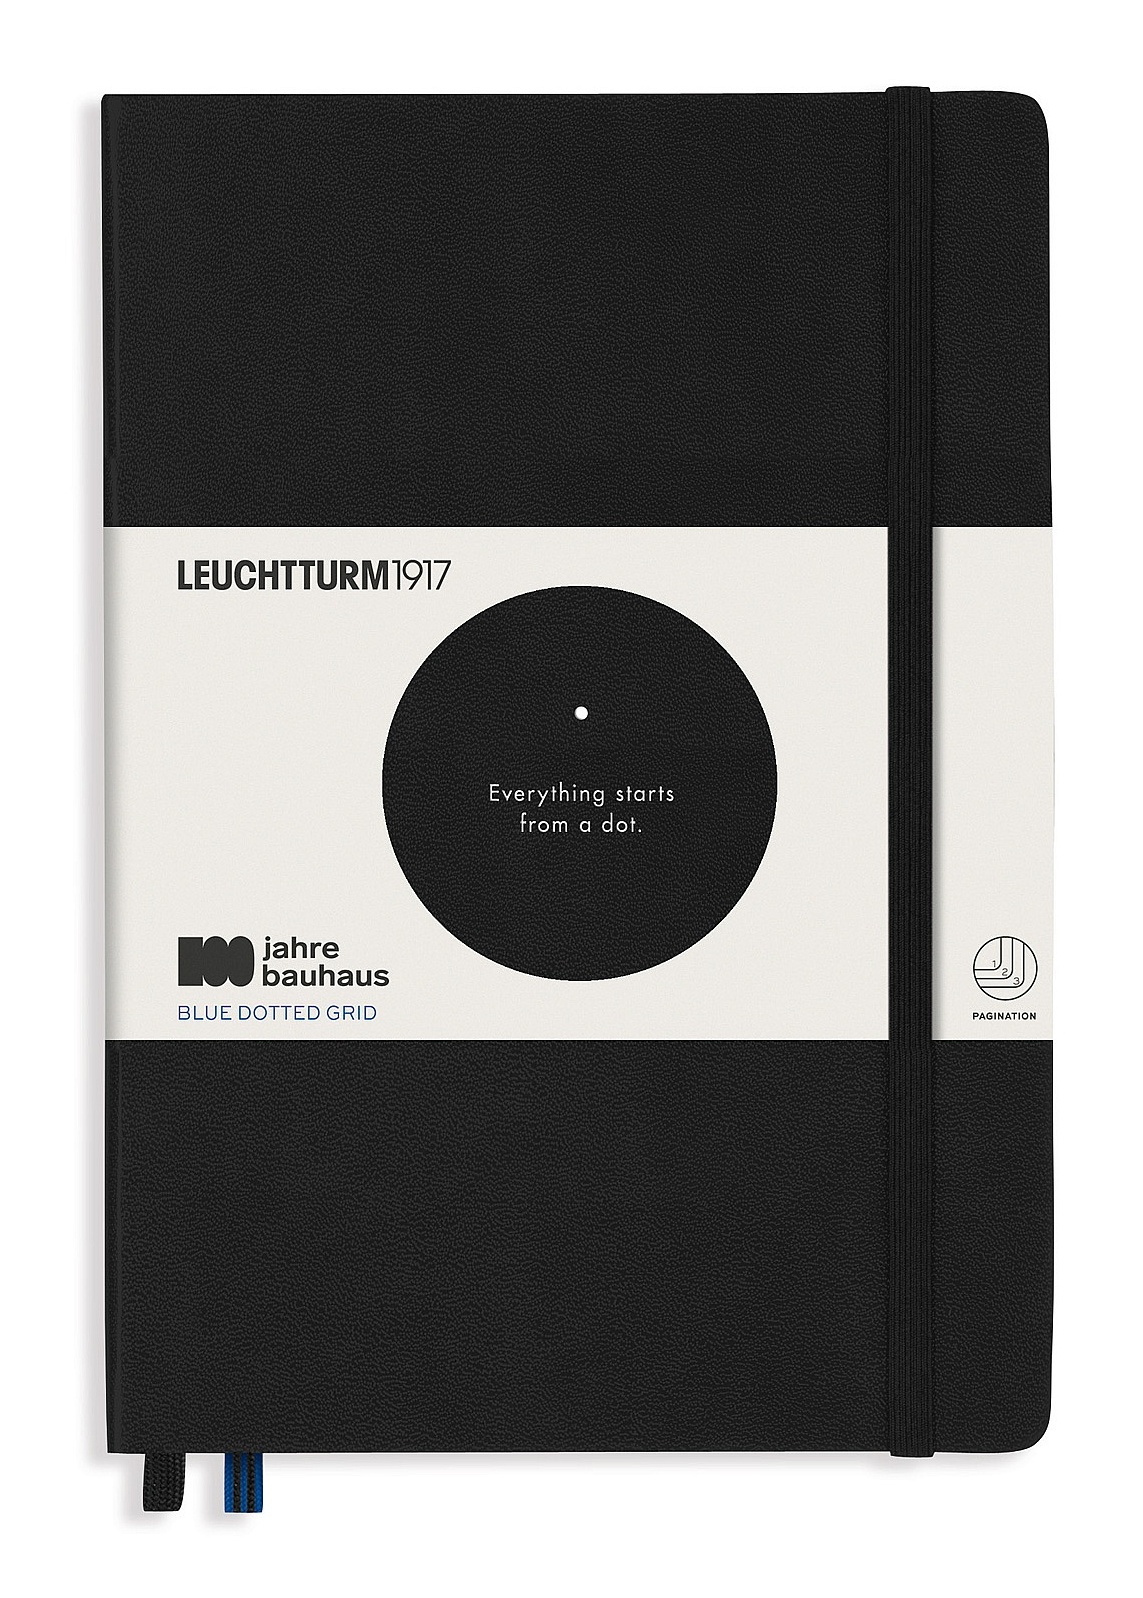 Блокнот Leuchtturm1917 Bauhaus Edition A5 (14. 5x21см. ) 80г/м2 - 251 стр. в синюю точку, твердая обложка, цвет: черный